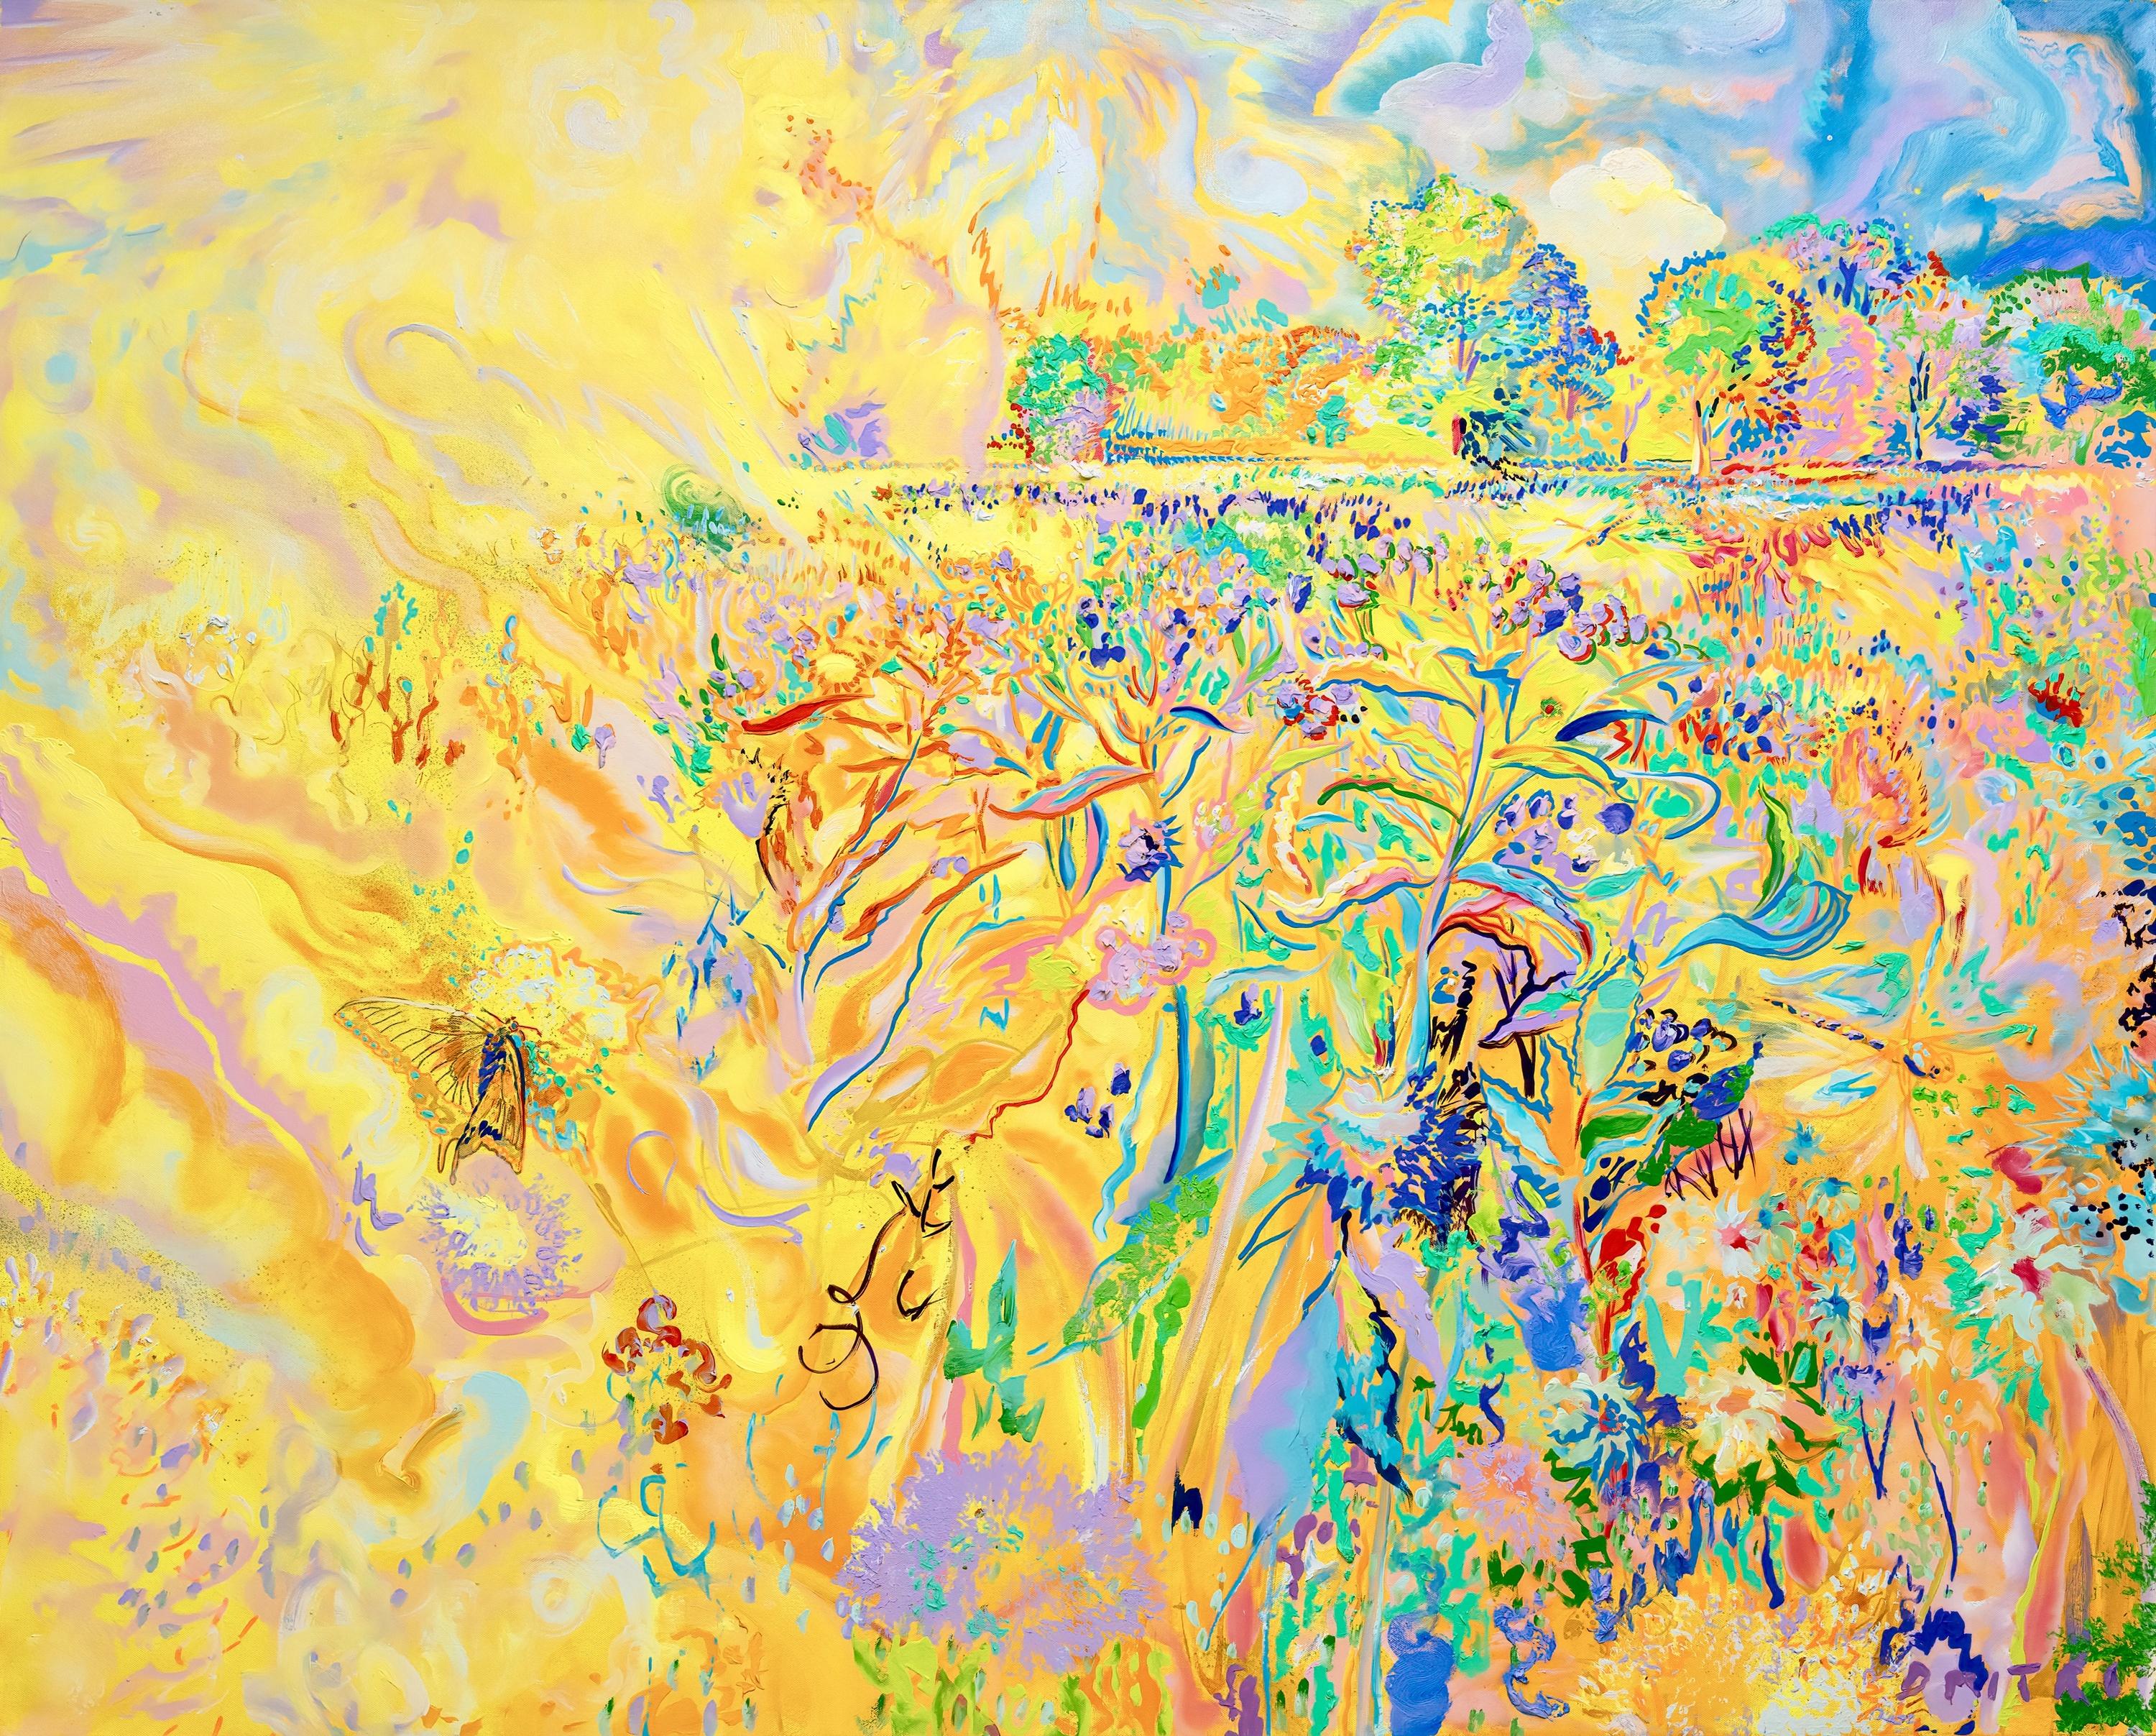 Huile sur toile

WAVENY MEADOW Série :
"Ces œuvres sont une variante de l'impressionnisme américain où la narration picturale et le sens du lieu sont pleinement établis. Cependant, mes sensations en peignant dans le pré ont supplanté l'exactitude de